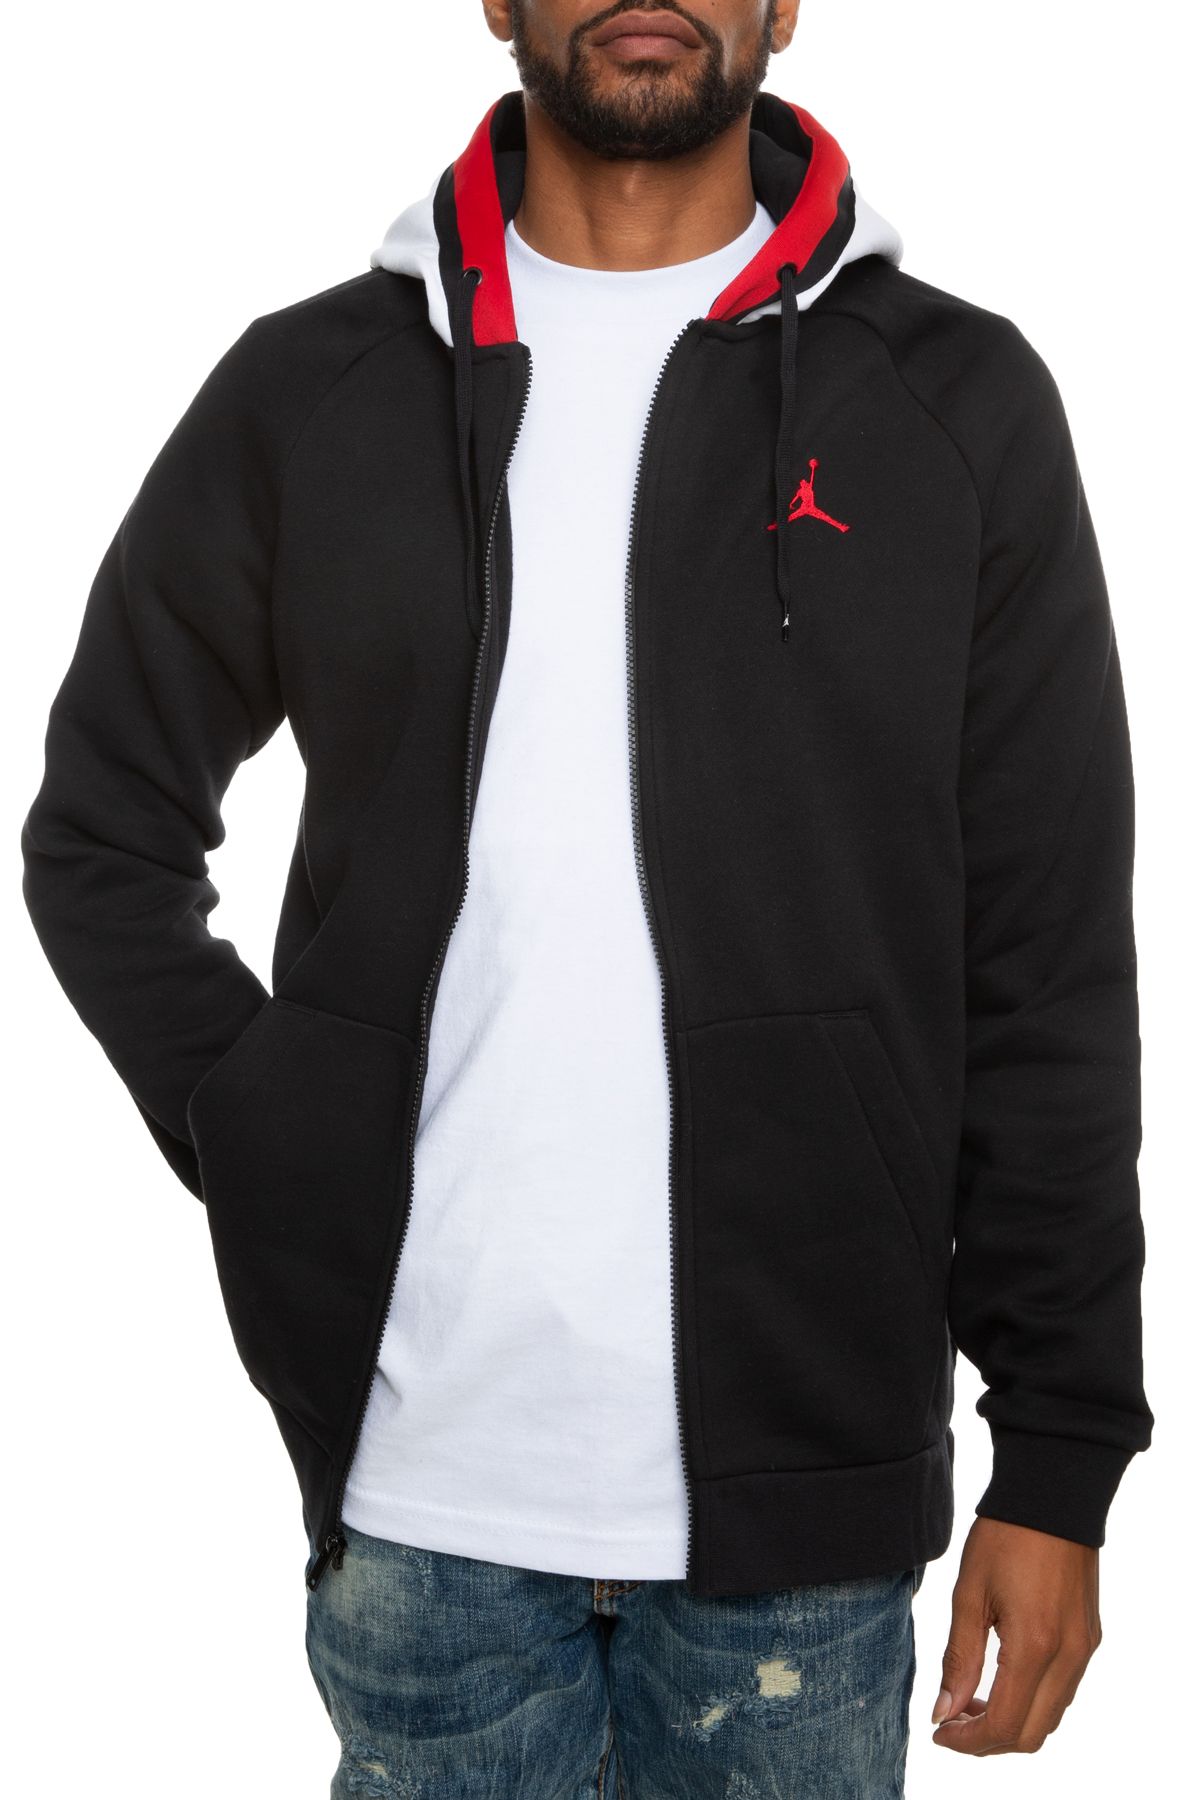 black white and red jordan hoodie